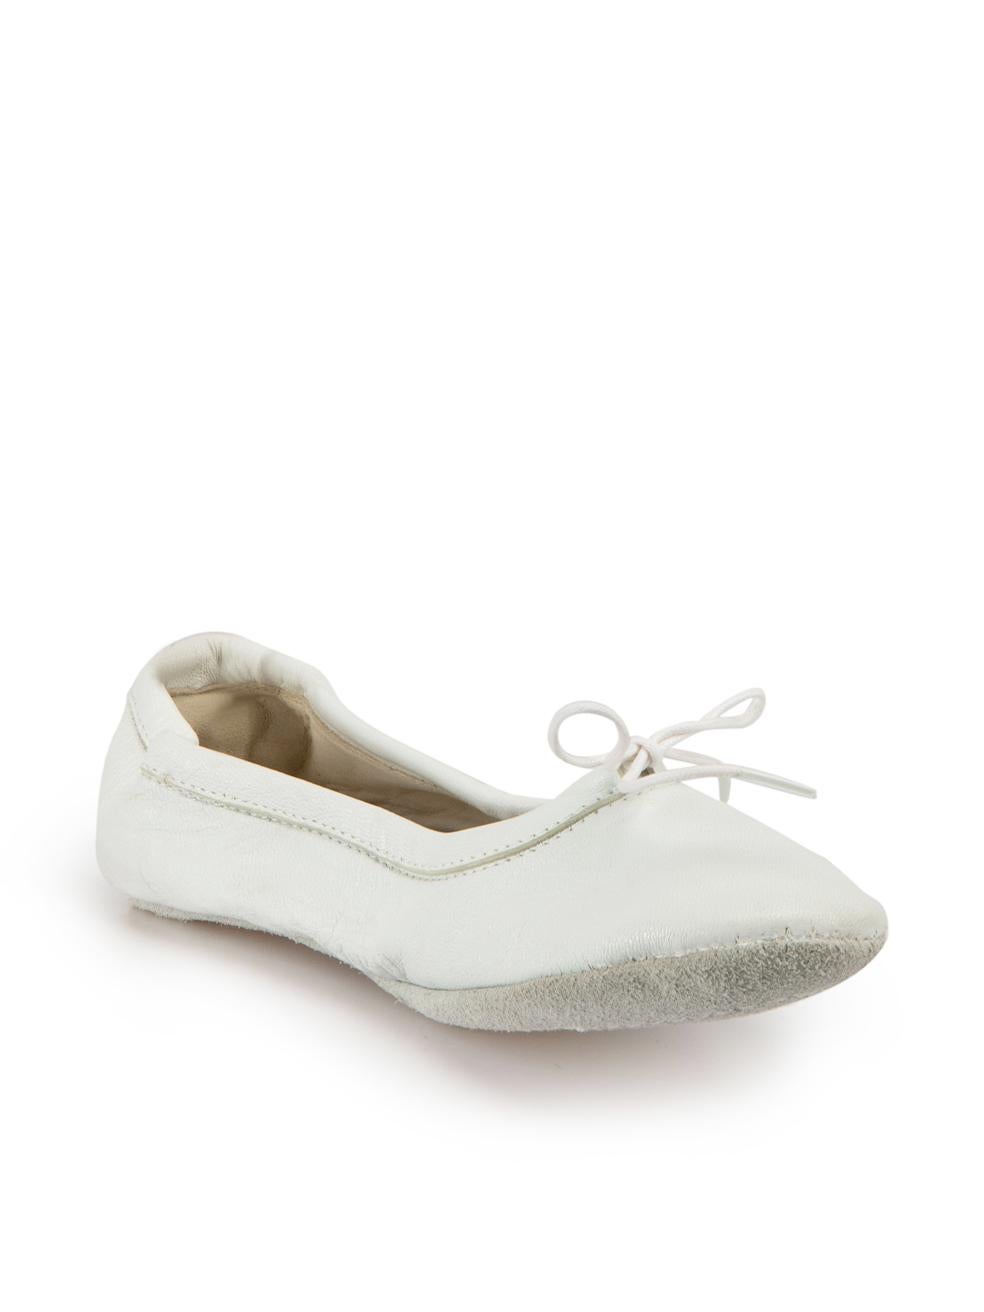 CONDIT ist sehr gut. Kaum sichtbare Abnutzungserscheinungen an den Schuhen sind bei diesem gebrauchten Maison Martin Margiela Designer-Wiederverkaufsartikel zu erkennen.



Einzelheiten


Weiß

Leder

Ballettwohnung

Slip-on

Runde